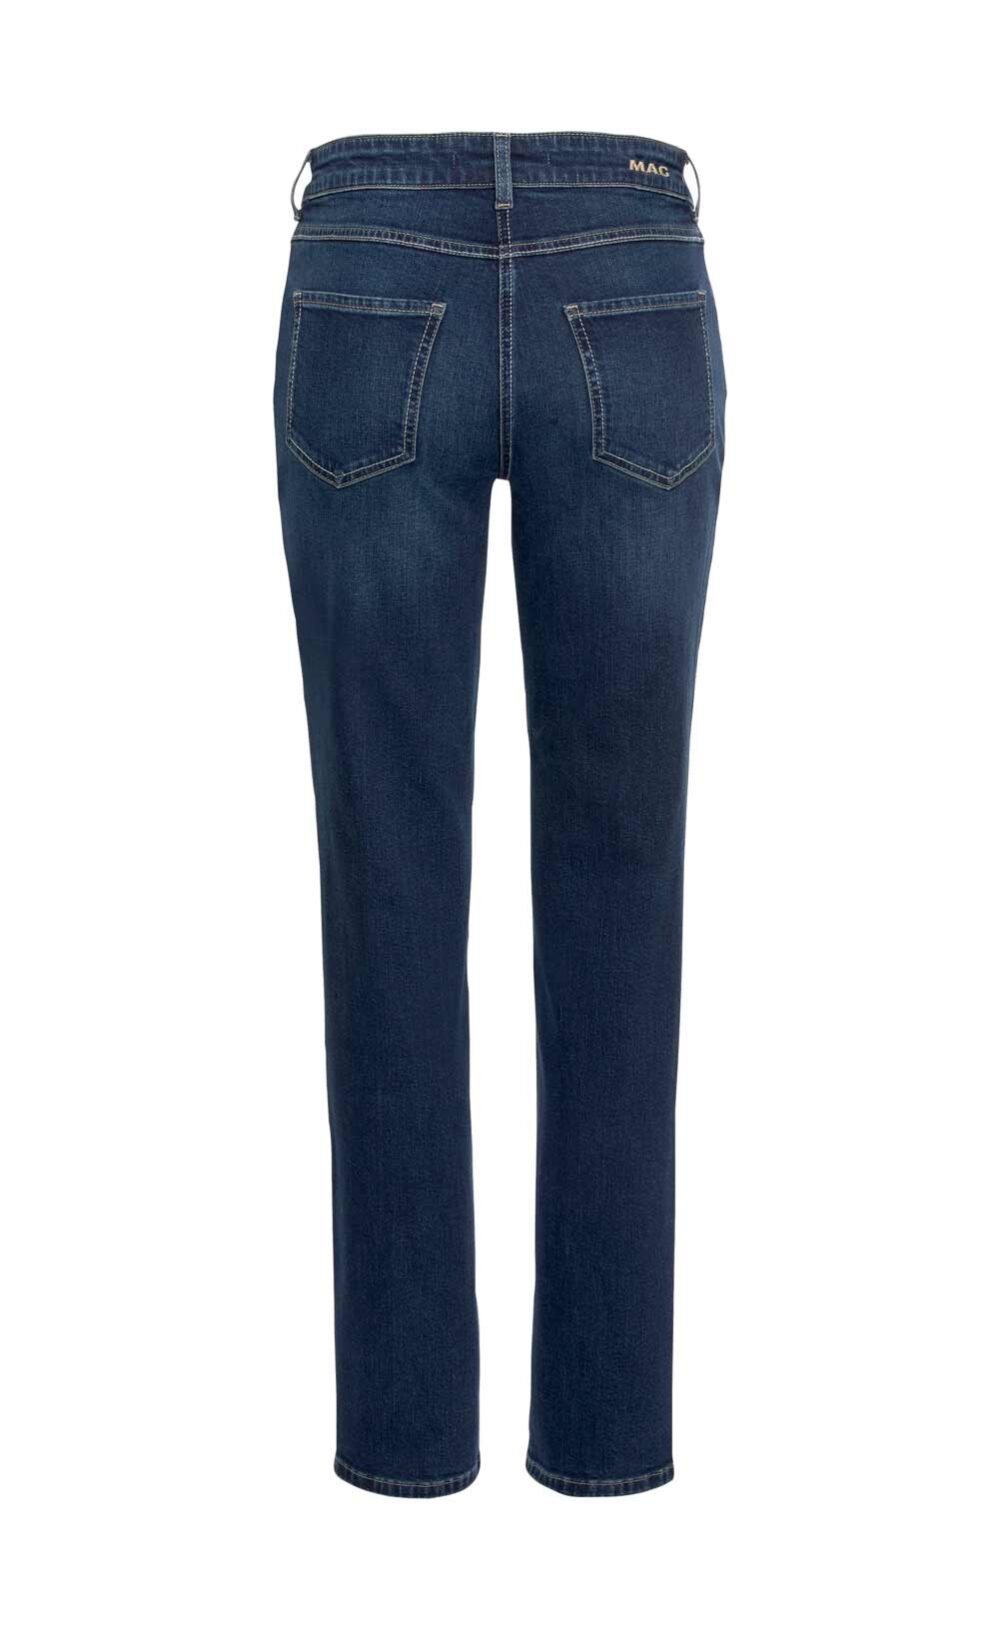 MAC Damen Jeans Hose Denim 7/8 Länge Five Pocket Stretch Missforty Online kaufen